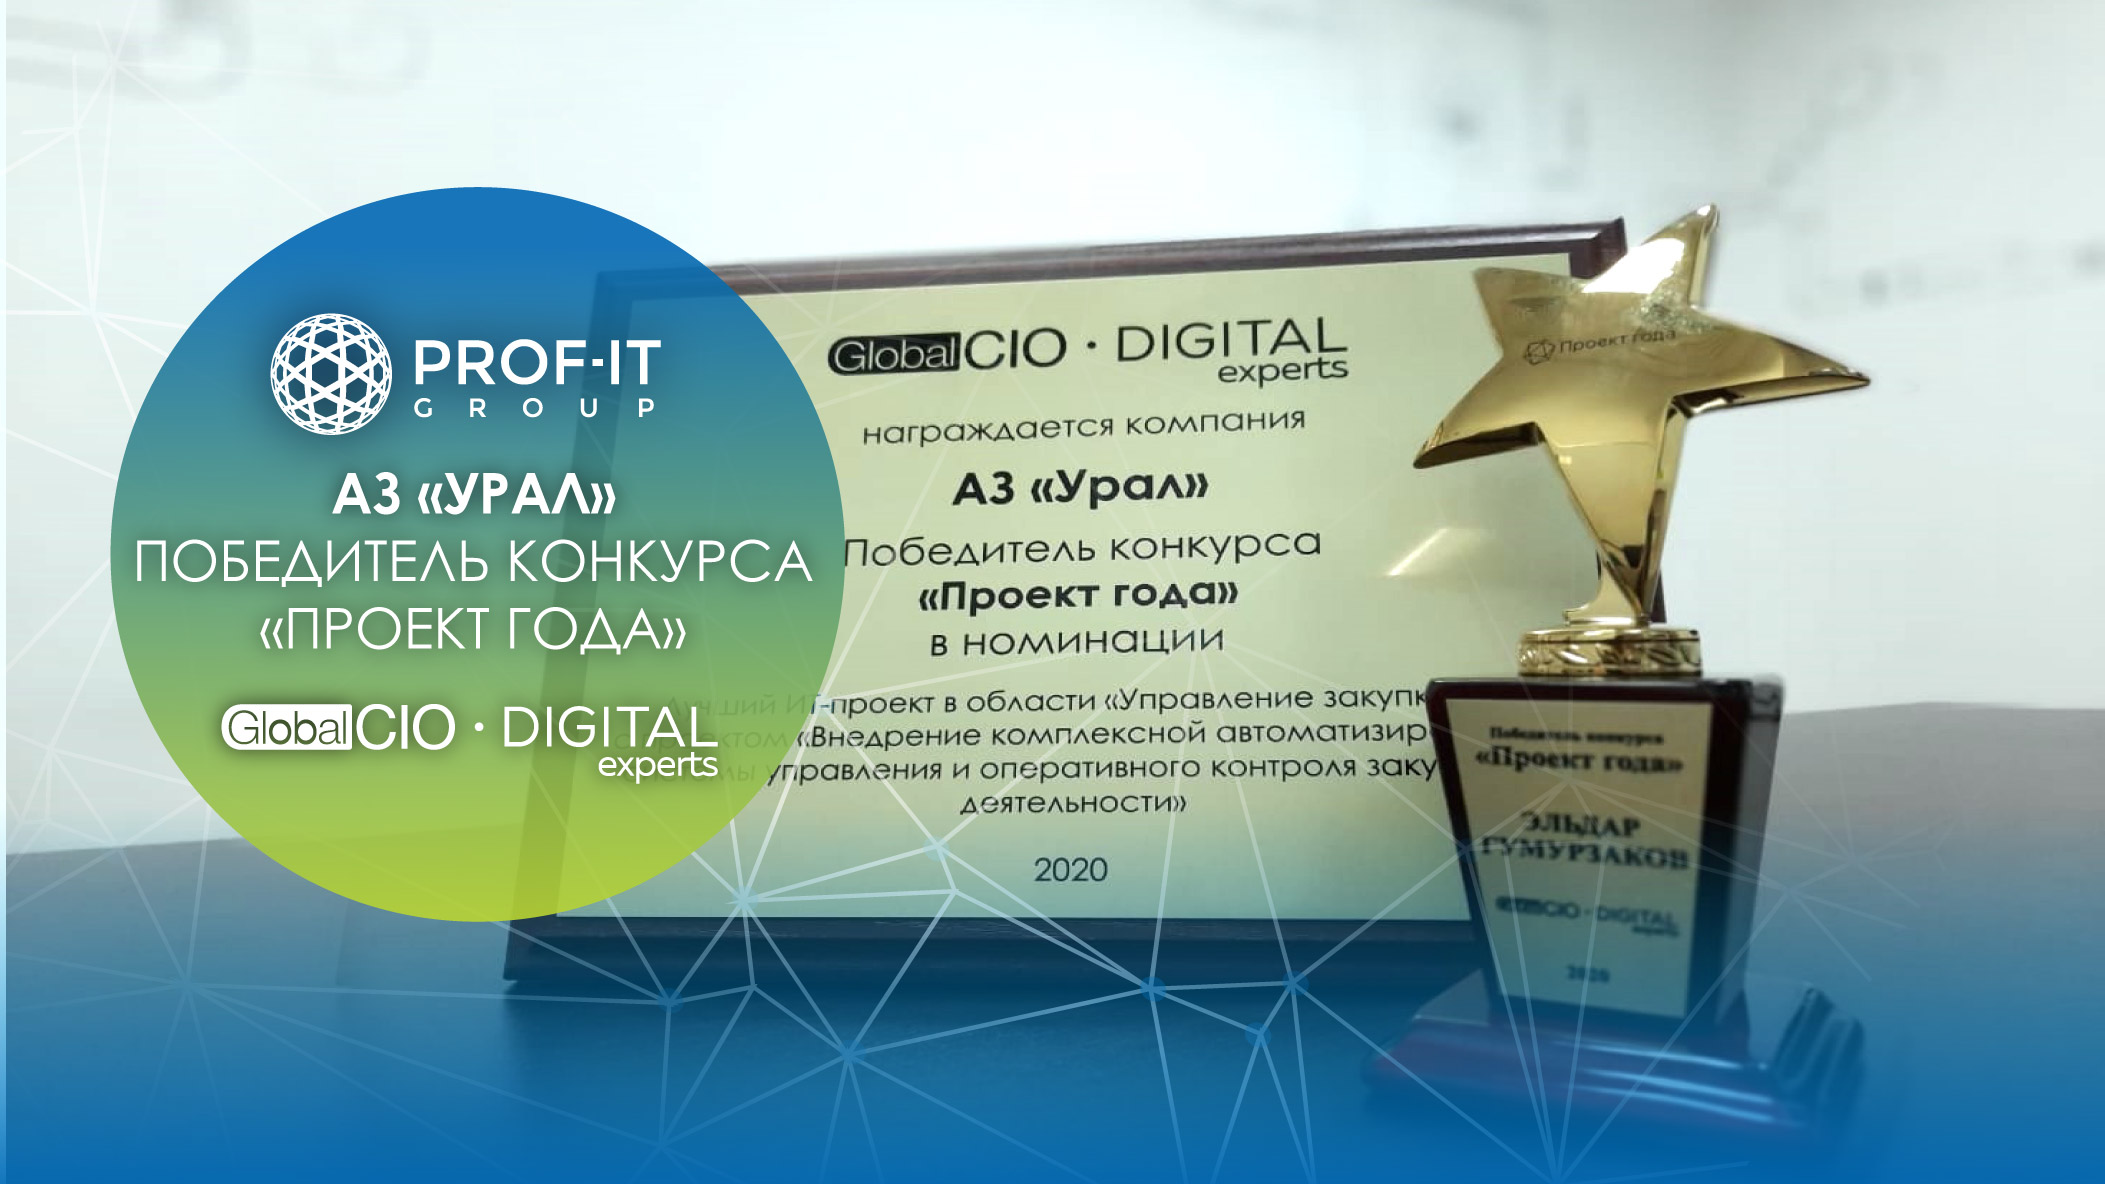 Проект PROF-IT GROUP для Автомобильного завода «УРАЛ» стал победителем конкурса «Проект года» Global CIO